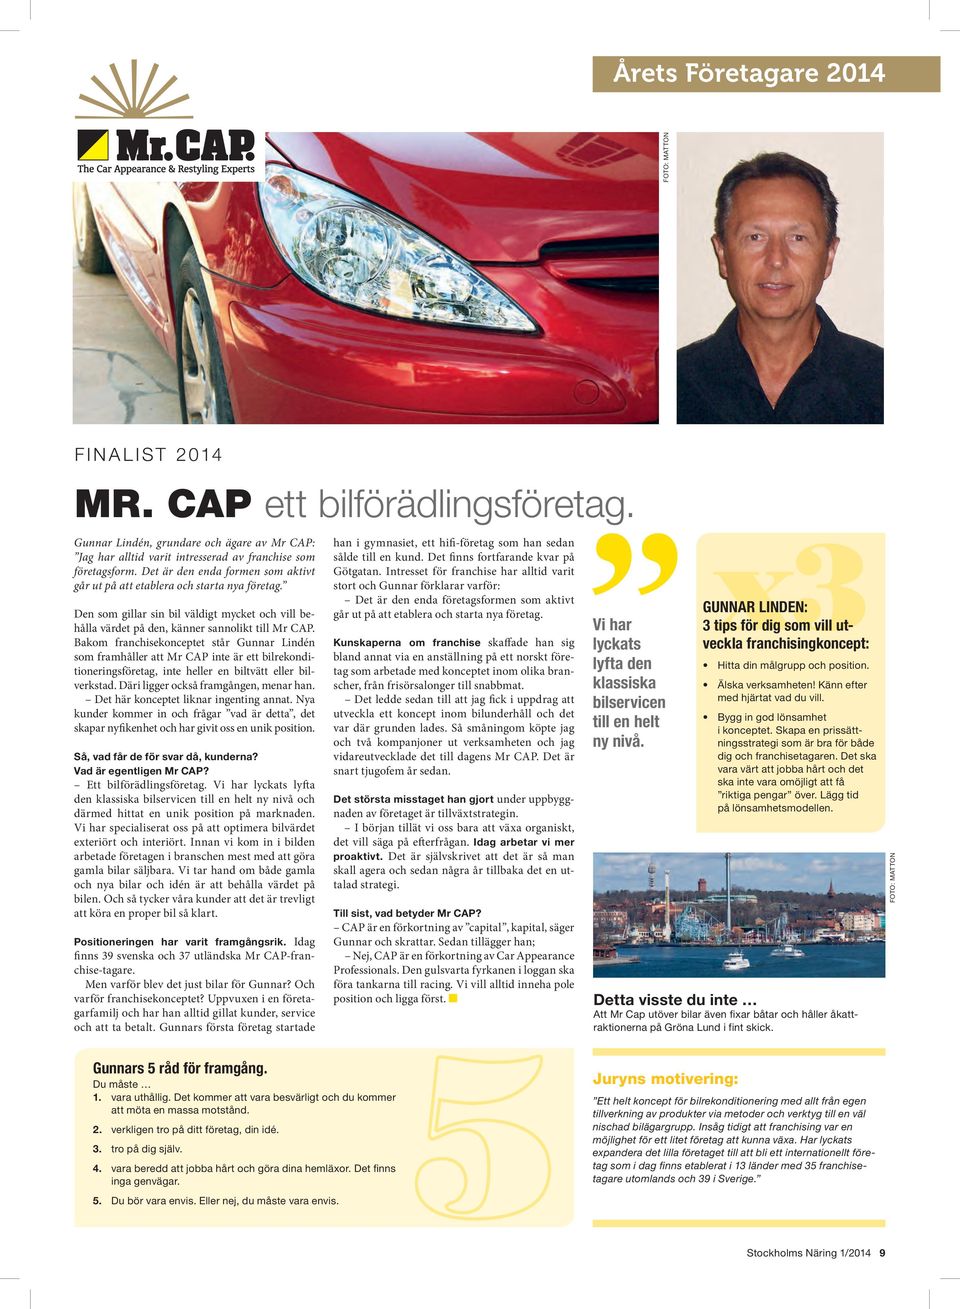 Bakom franchisekonceptet står Gunnar Lindén som framhåller att Mr CAP inte är ett bilrekonditioneringsföretag, inte heller en biltvätt eller bilverkstad. Däri ligger också framgången, menar han.